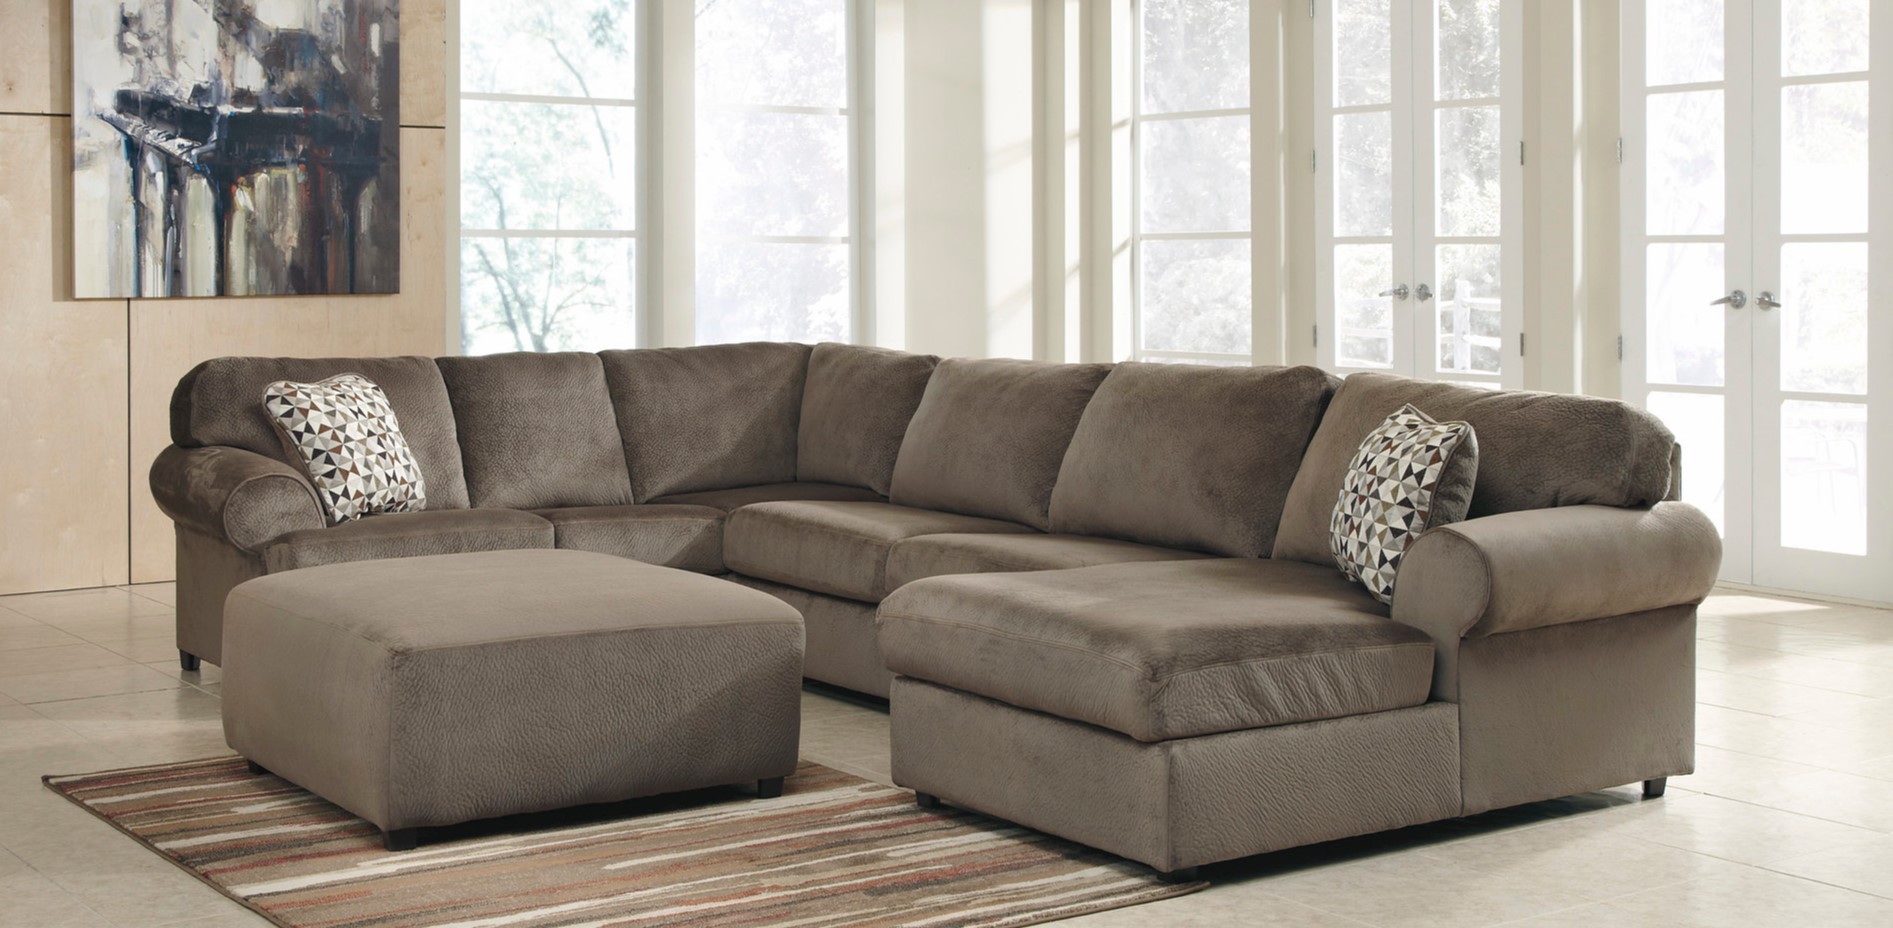 Однотонный диван темно-коричневого цвета идеально подойдет для современной гостиной